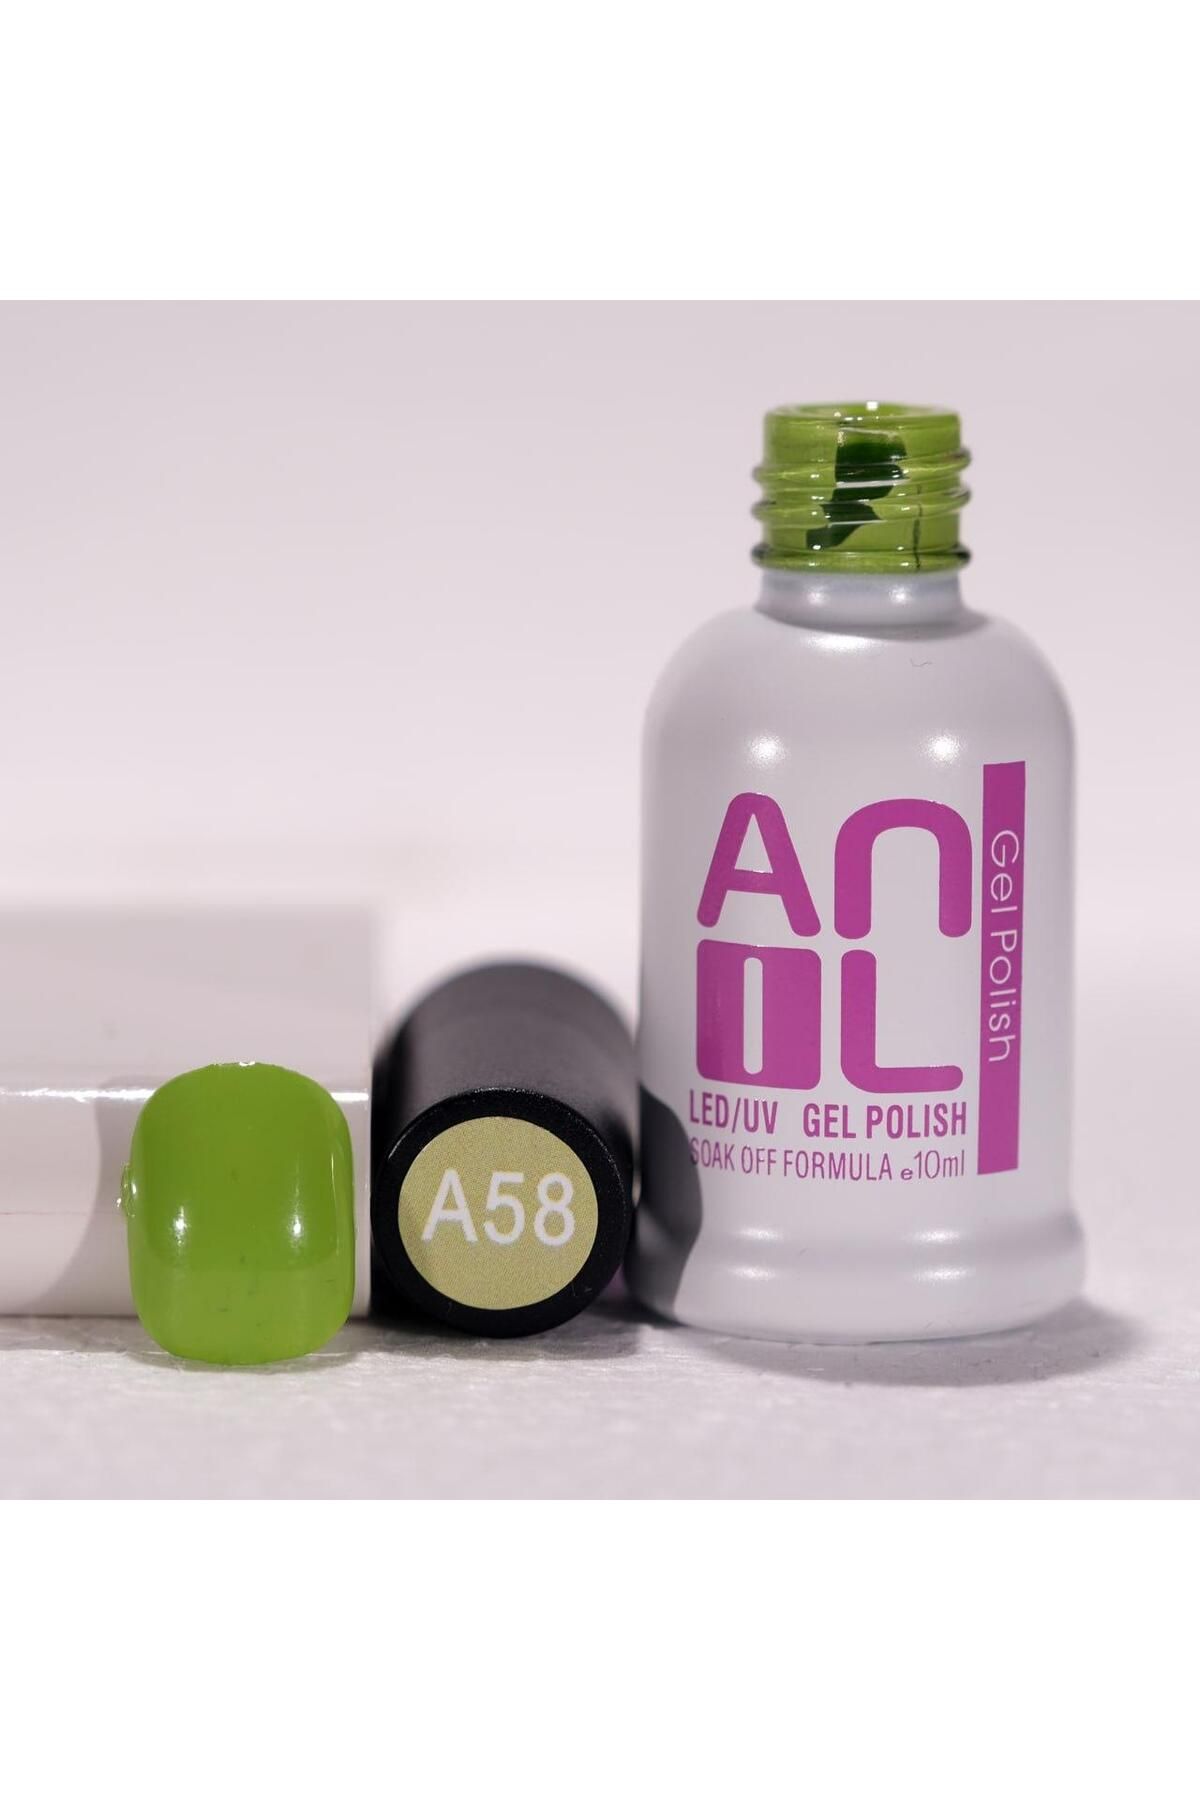 Anil Professional Cosmetics Kalıcı Oje Yeşil Renk 10ml | Dayanıklı Kolay Uygulanan Trend Renkler | Hızlı Kuruma, Parlaklık